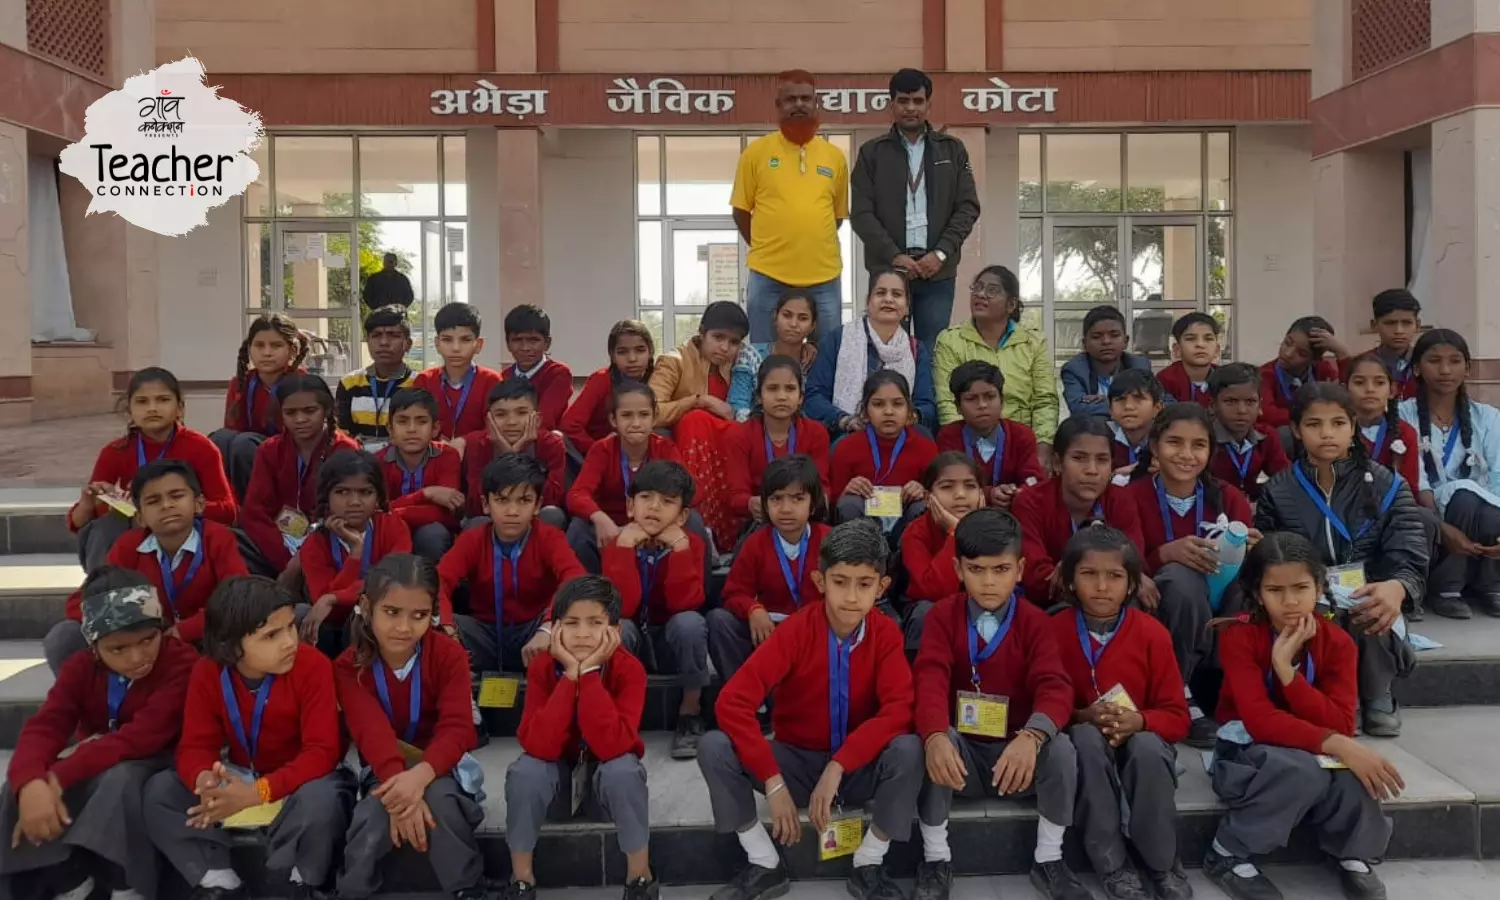 राजस्थान के हाशिए वाले जनजातीय समुदाय के स्कूल को हाइटेक बनाने का जुनून